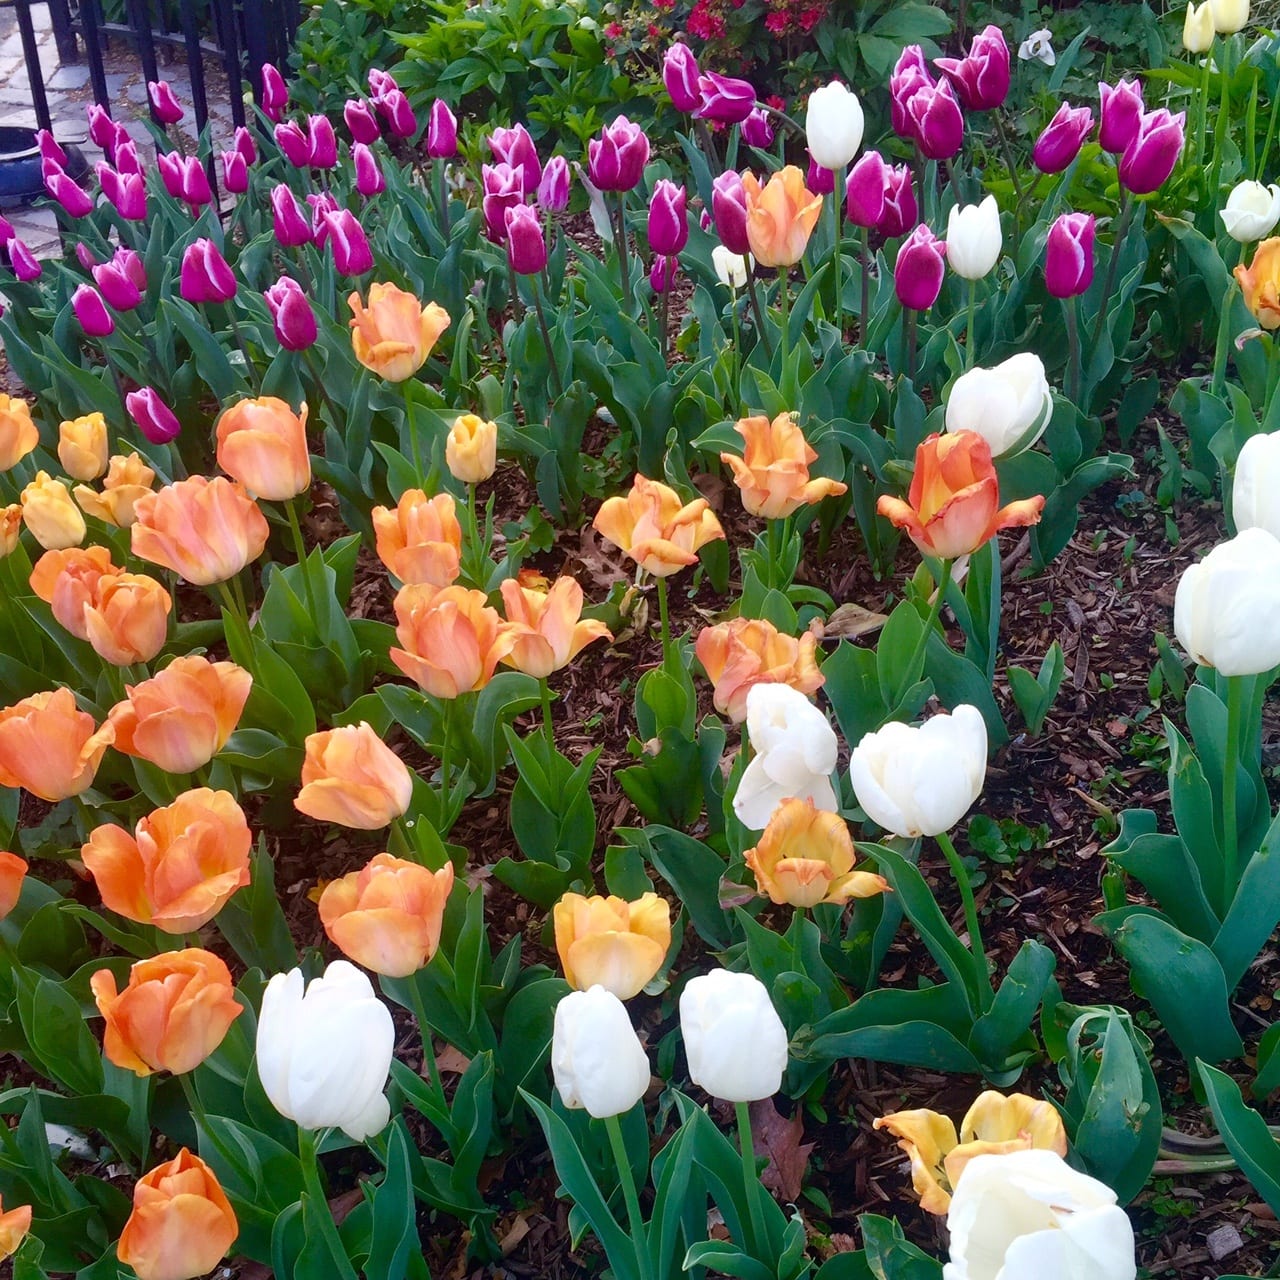 New York Tulips